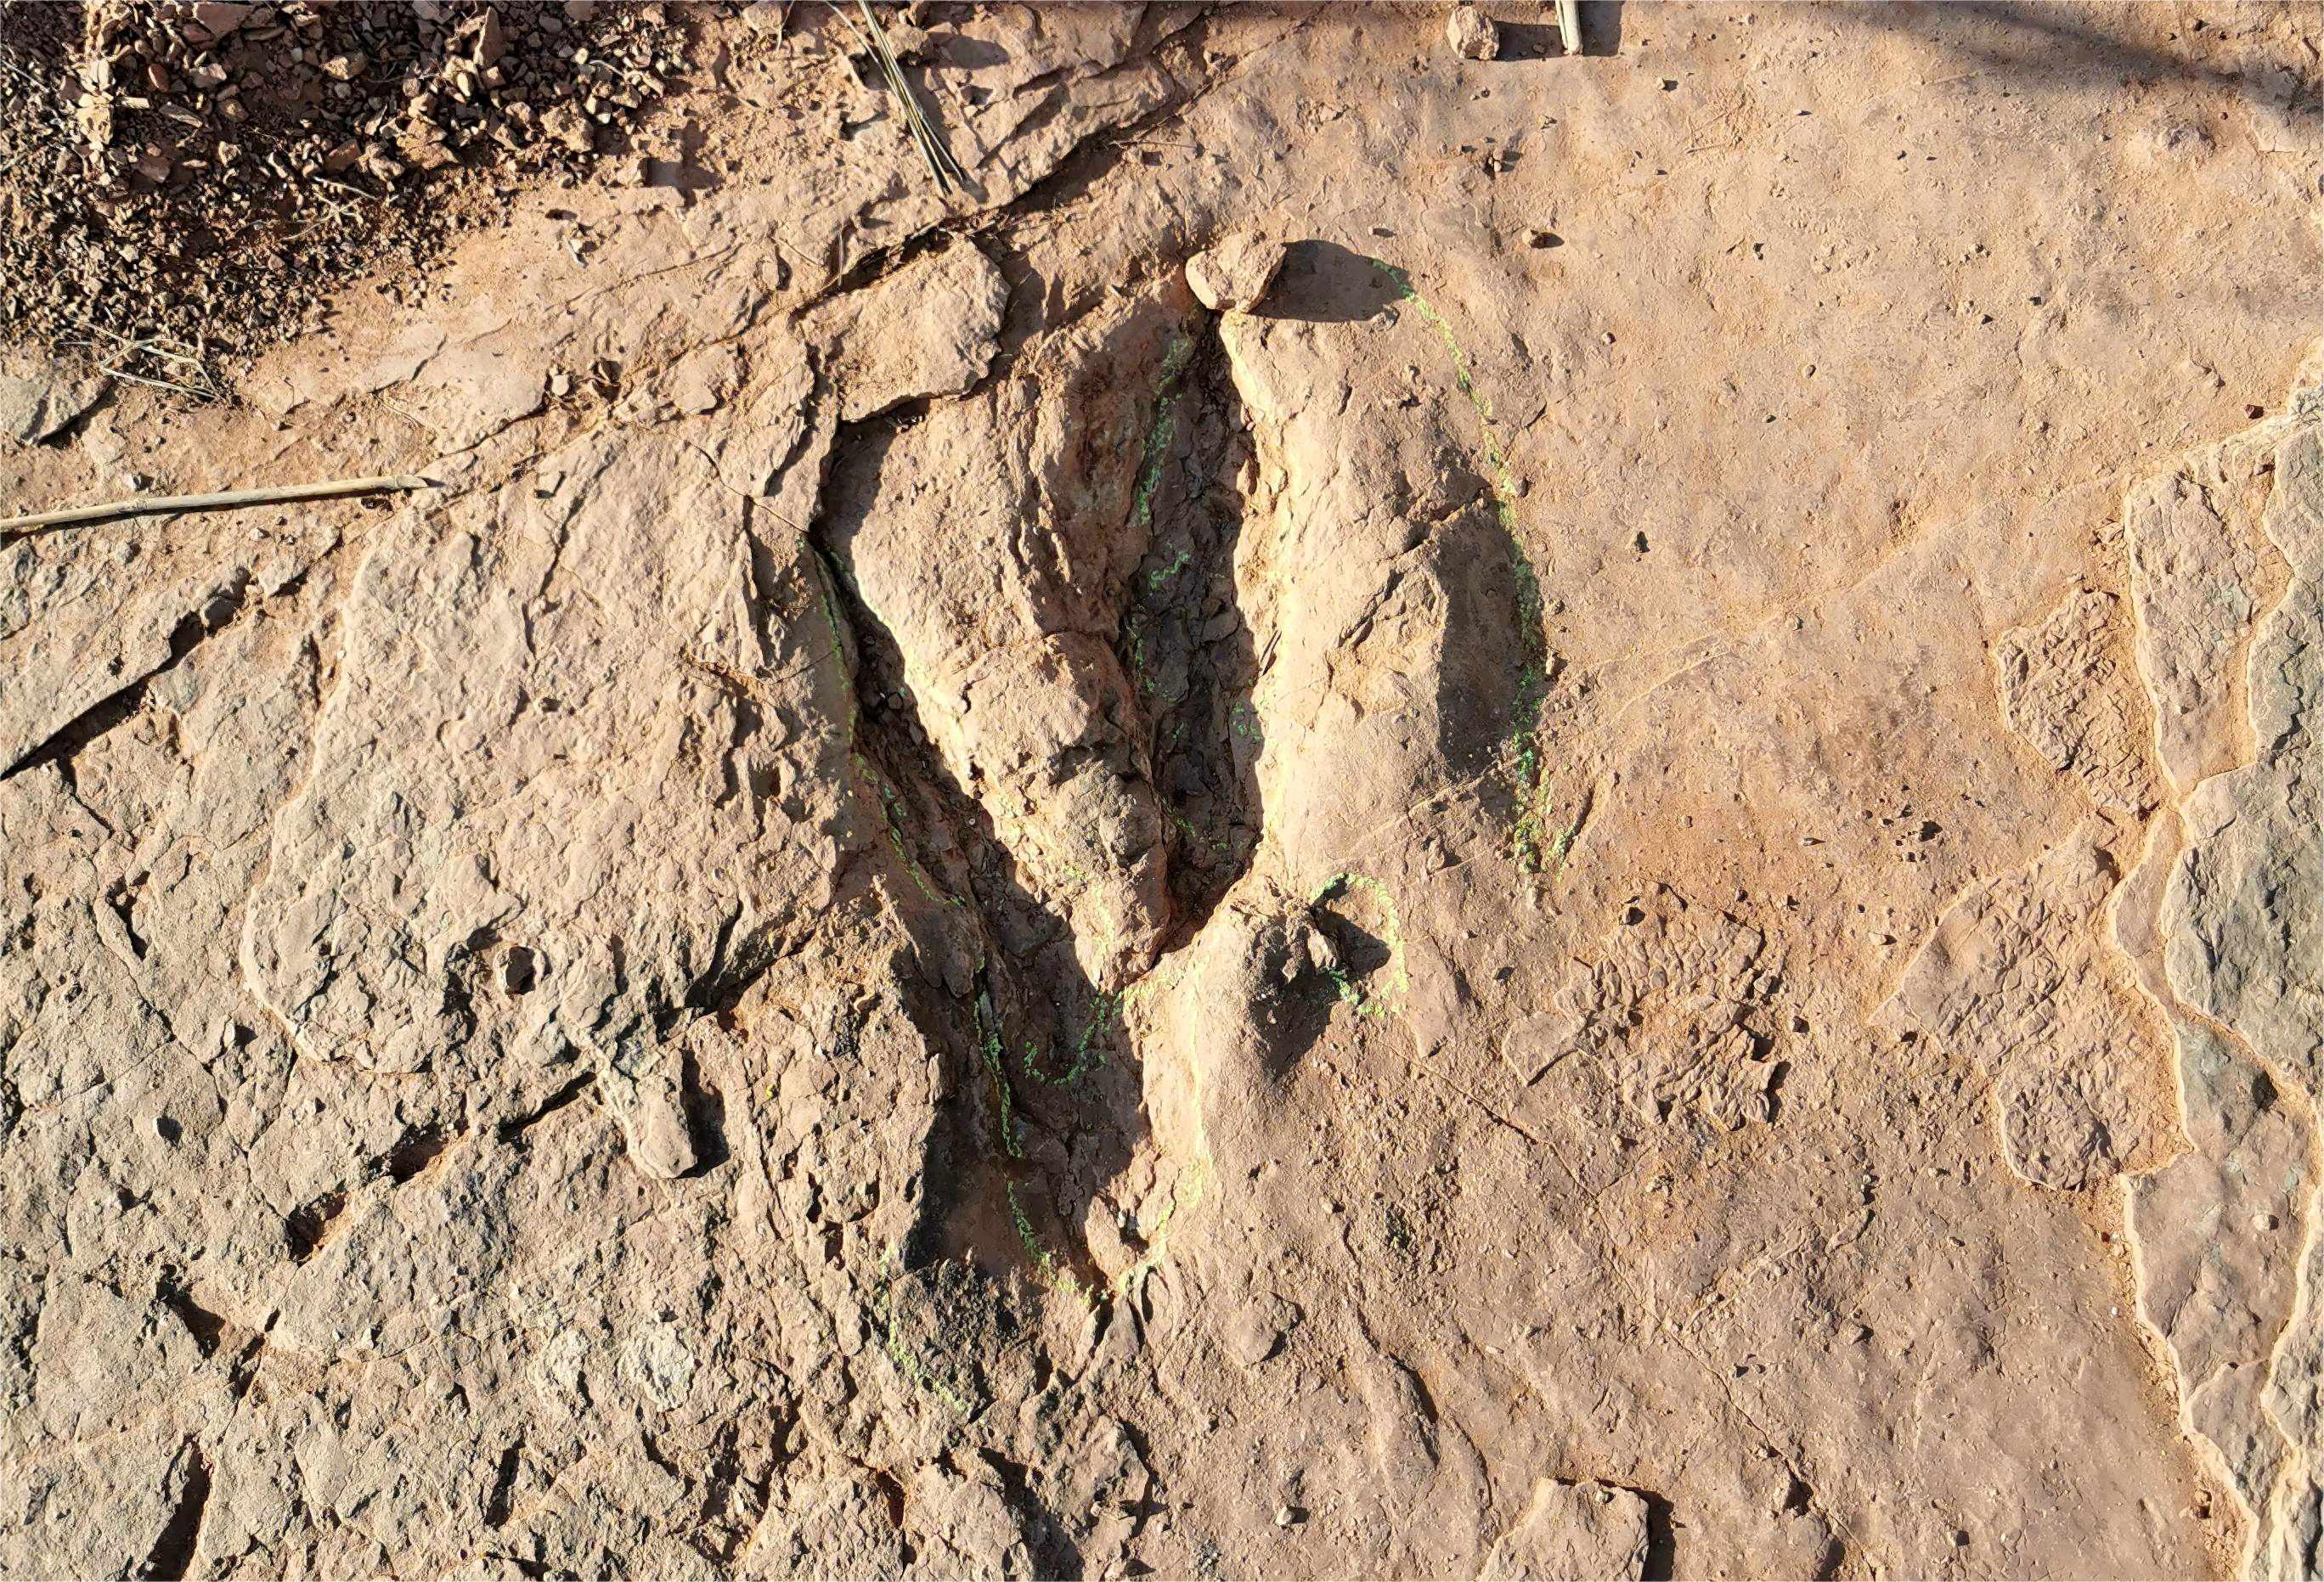 中国科学家发现世界最大恐爪龙类足迹